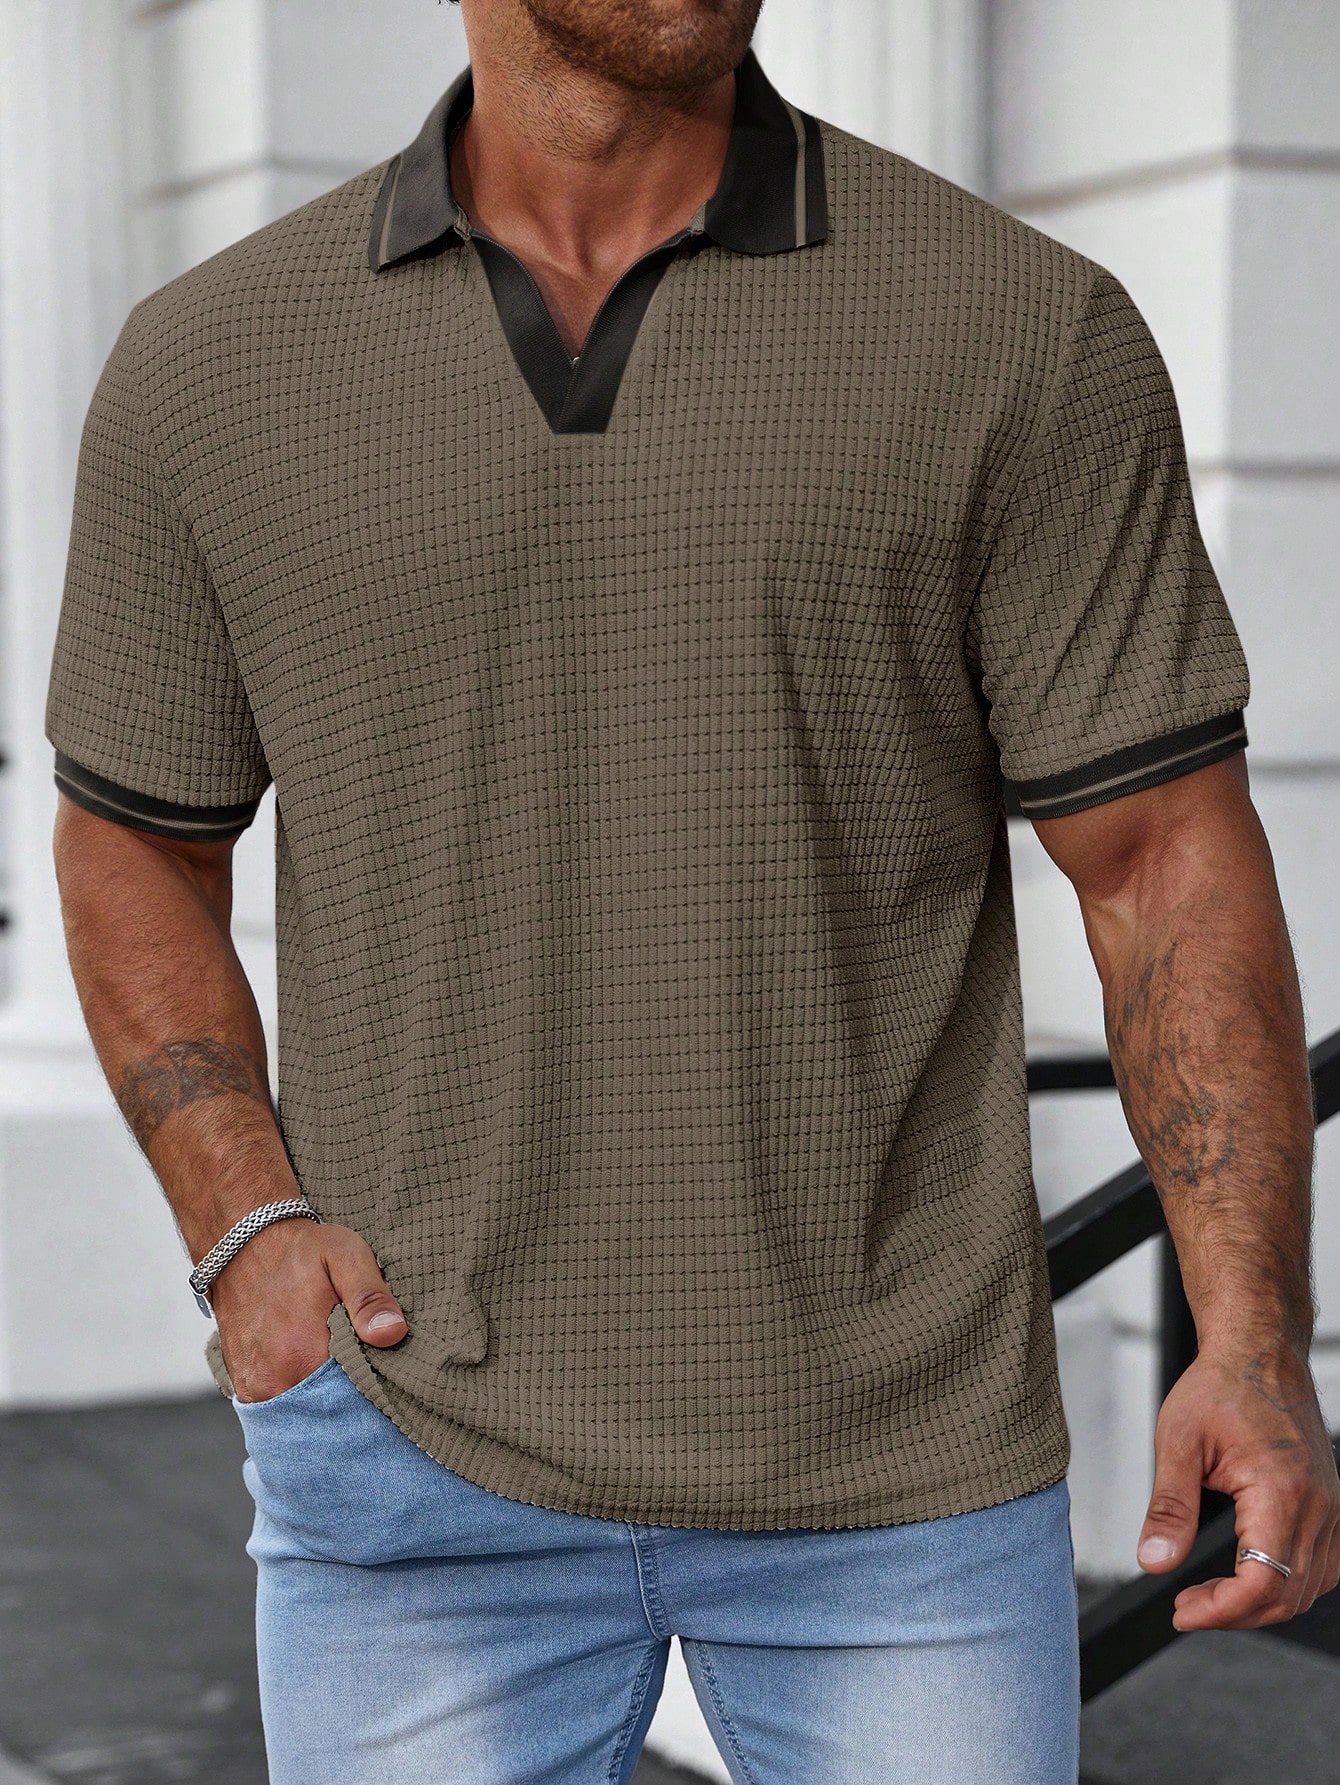 Мужская рубашка-поло больших размеров Manfinity Homme с цветными блоками, зеленый рубашка мужская из ткани оксфорд с коротким рукавом в полоску 100% хлопок